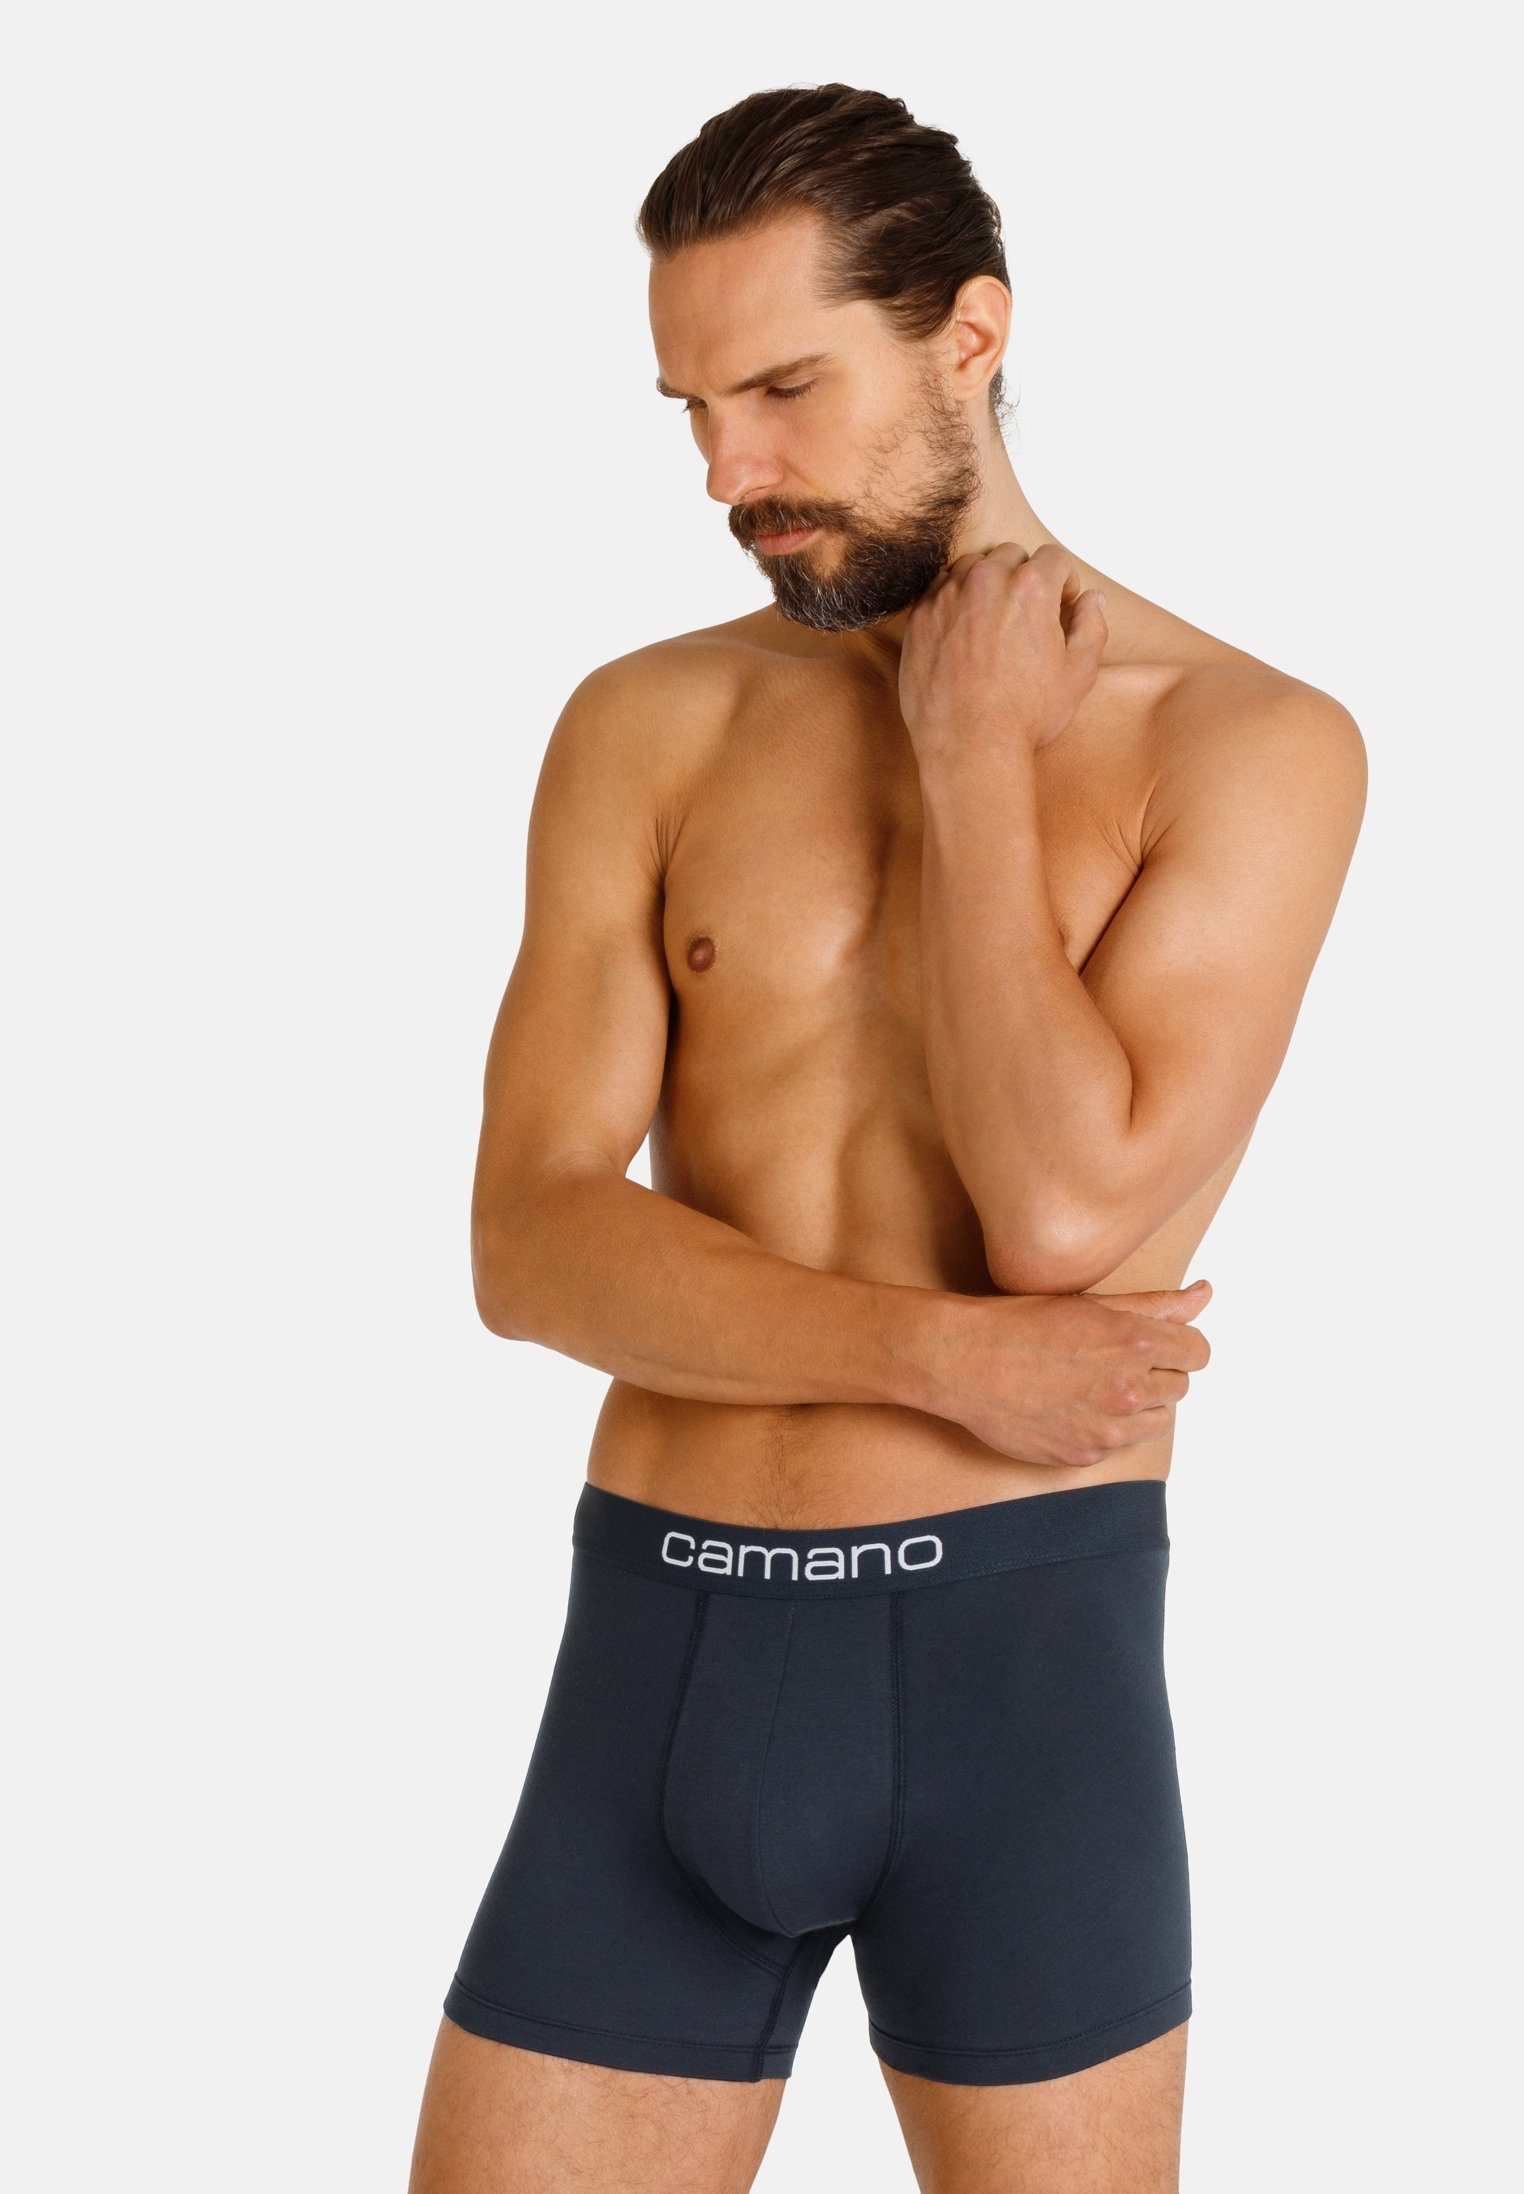 Camano Boxershorts Comfort mit nachhaltigerer Baumwolle (BCI) (6-St) im praktischen 6er-Pack grau, schwarz | Boxershorts